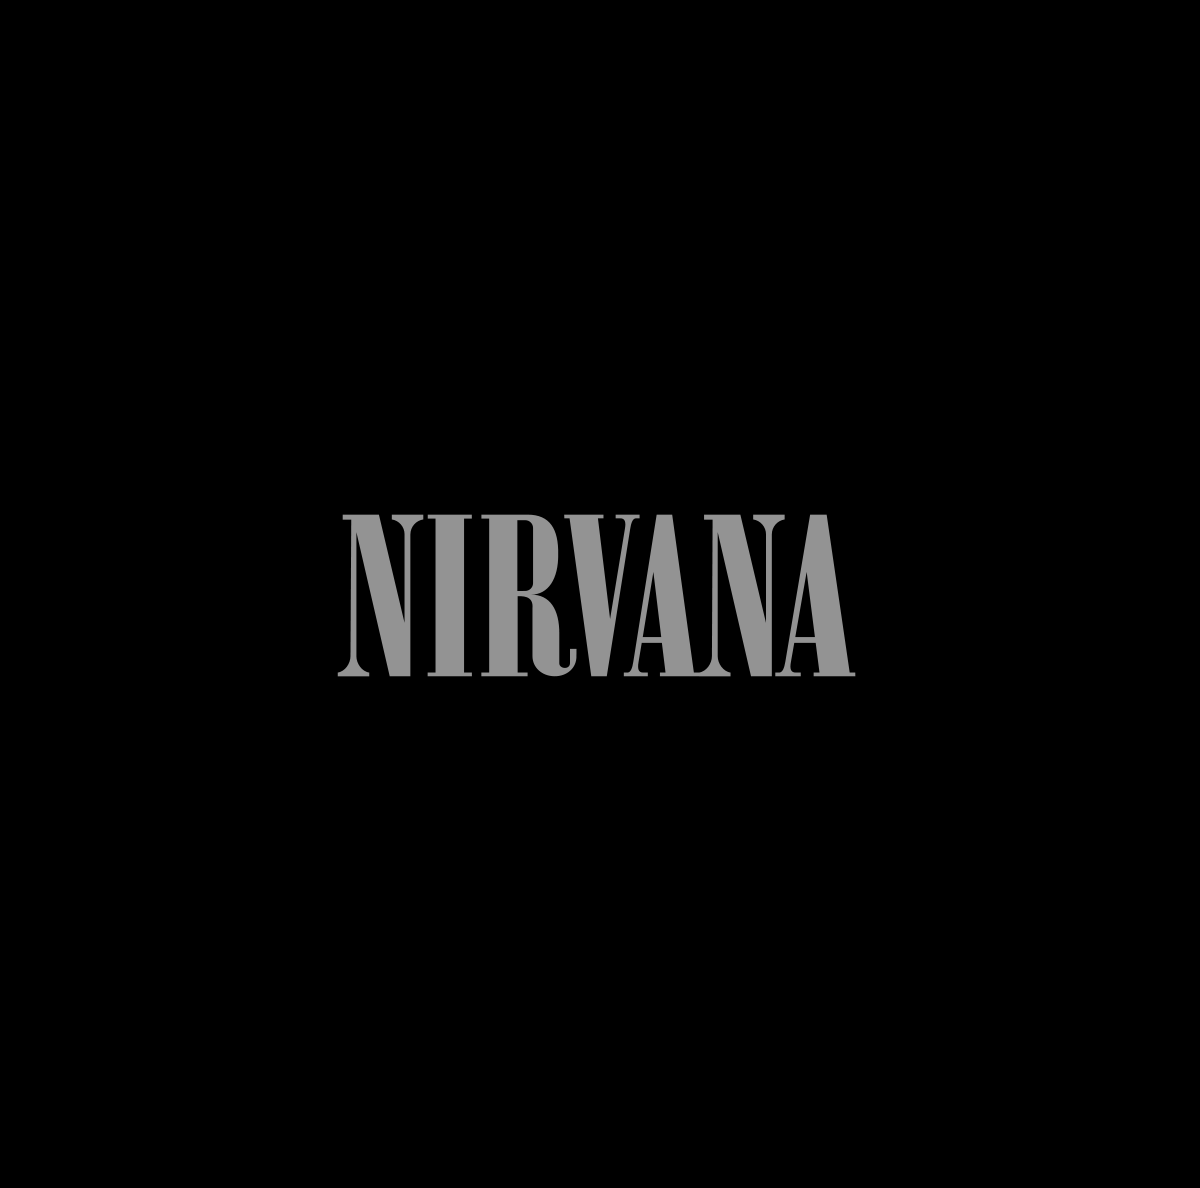 Buy – Nirvana "Nirvana" 12" – Band & Music Merch – Cold Cuts Merch